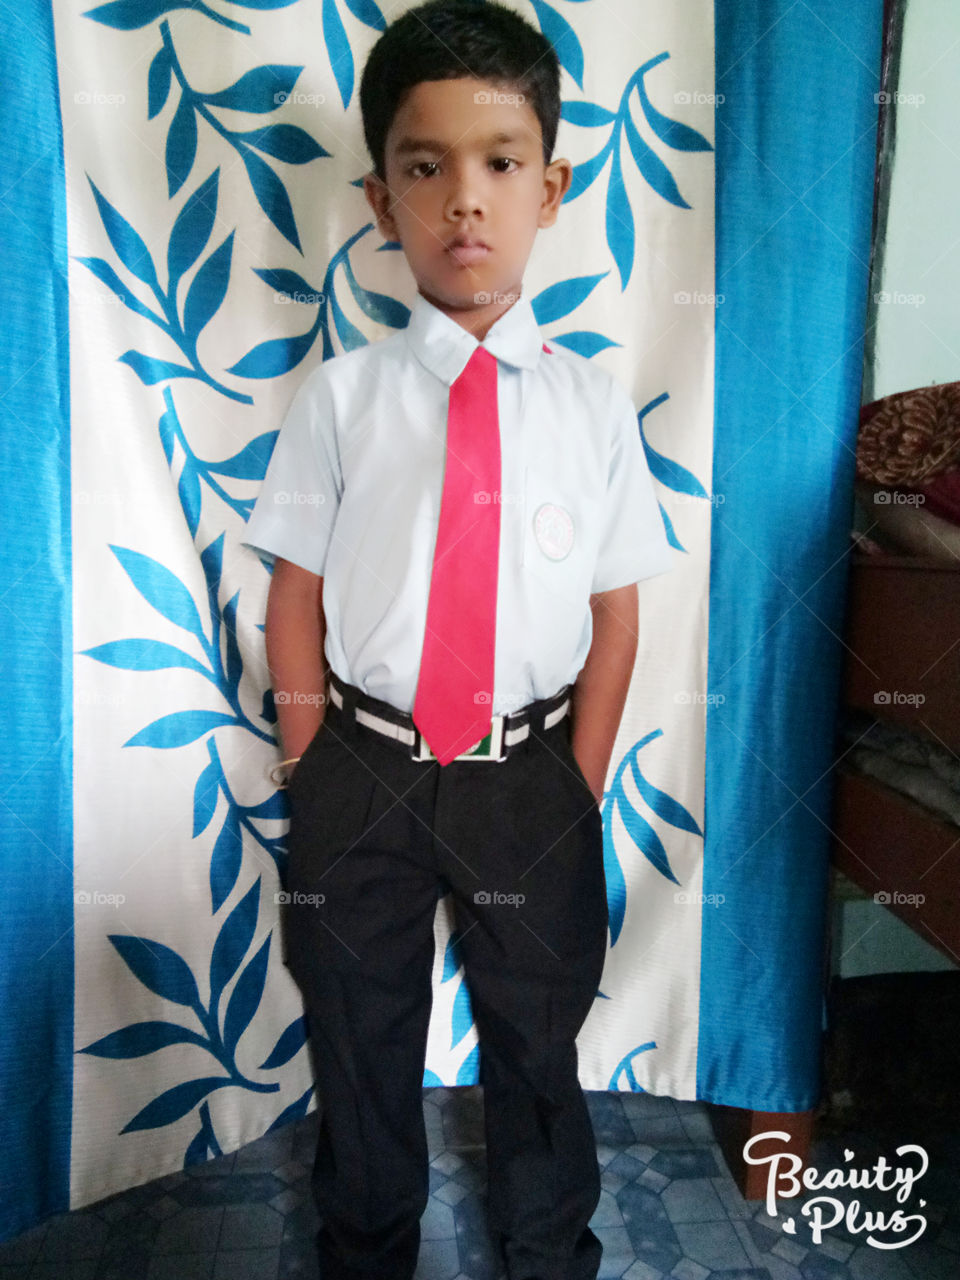 School boy